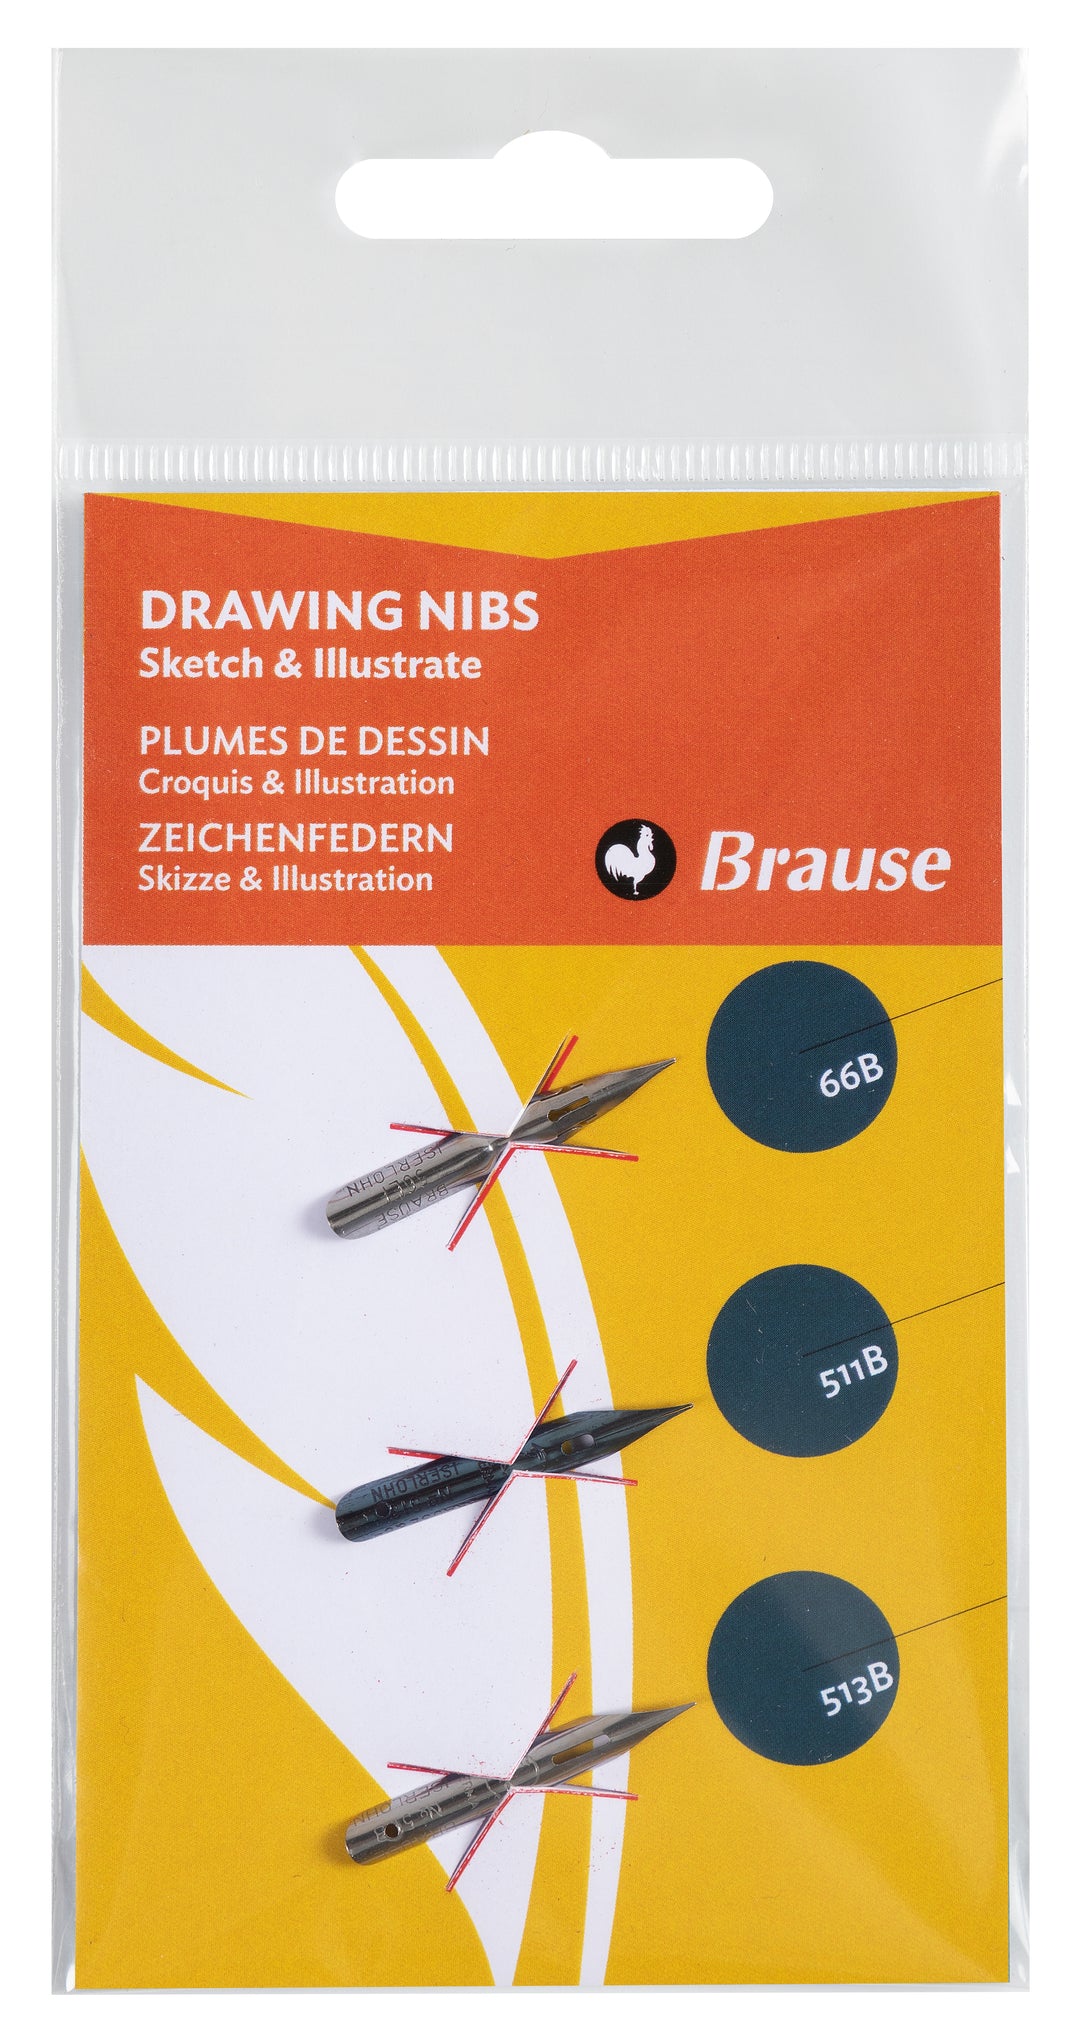 Brause Set of 3 Drawing Nibs - 66B/511B/513B